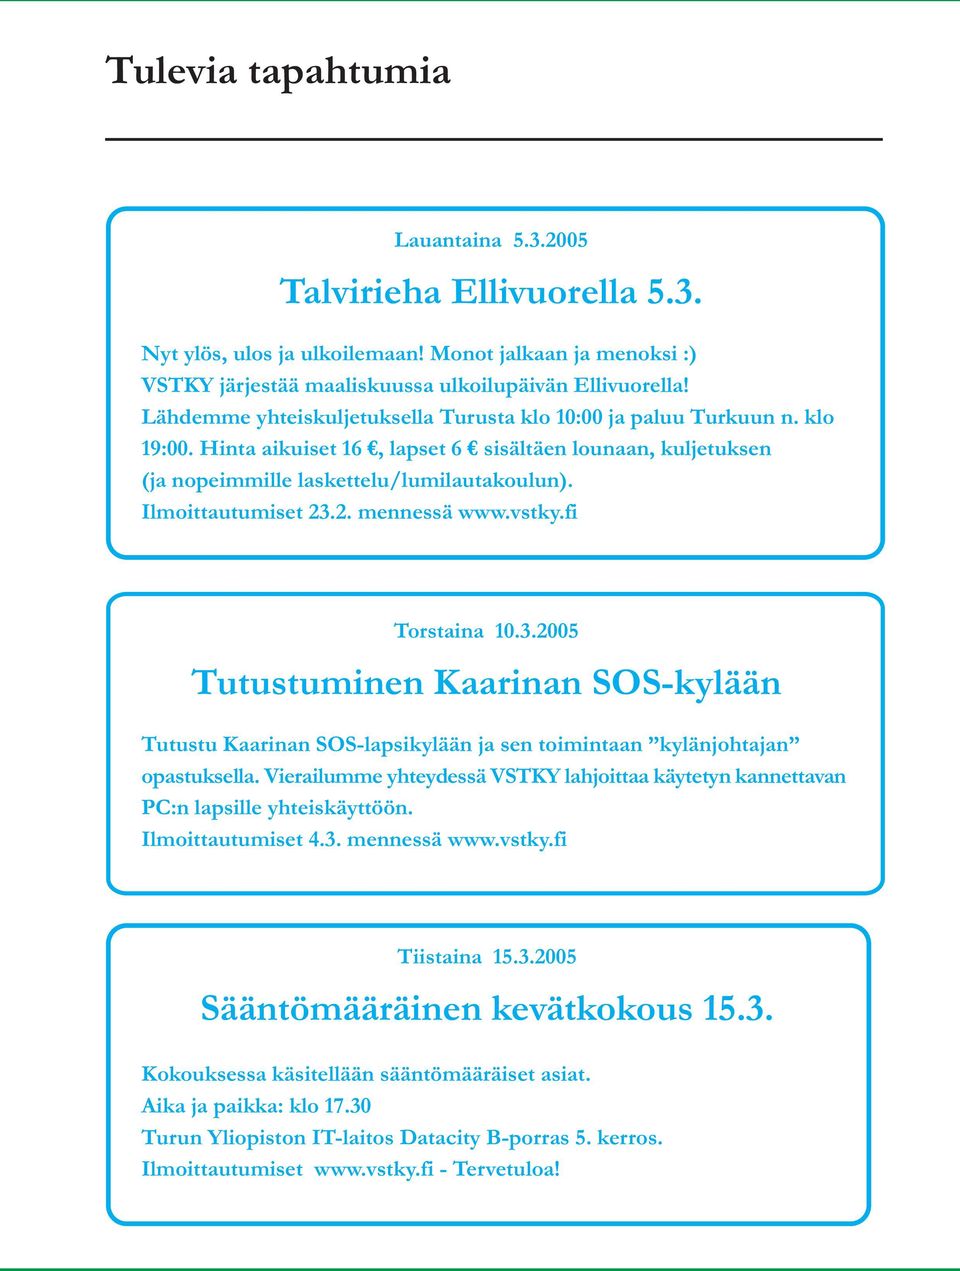 Ilmoittautumiset 23.2. mennessä www.vstky.fi Torstaina 10.3.2005 Tutustuminen Kaarinan SOS-kylään Tutustu Kaarinan SOS-lapsikylään ja sen toimintaan kylänjohtajan opastuksella.